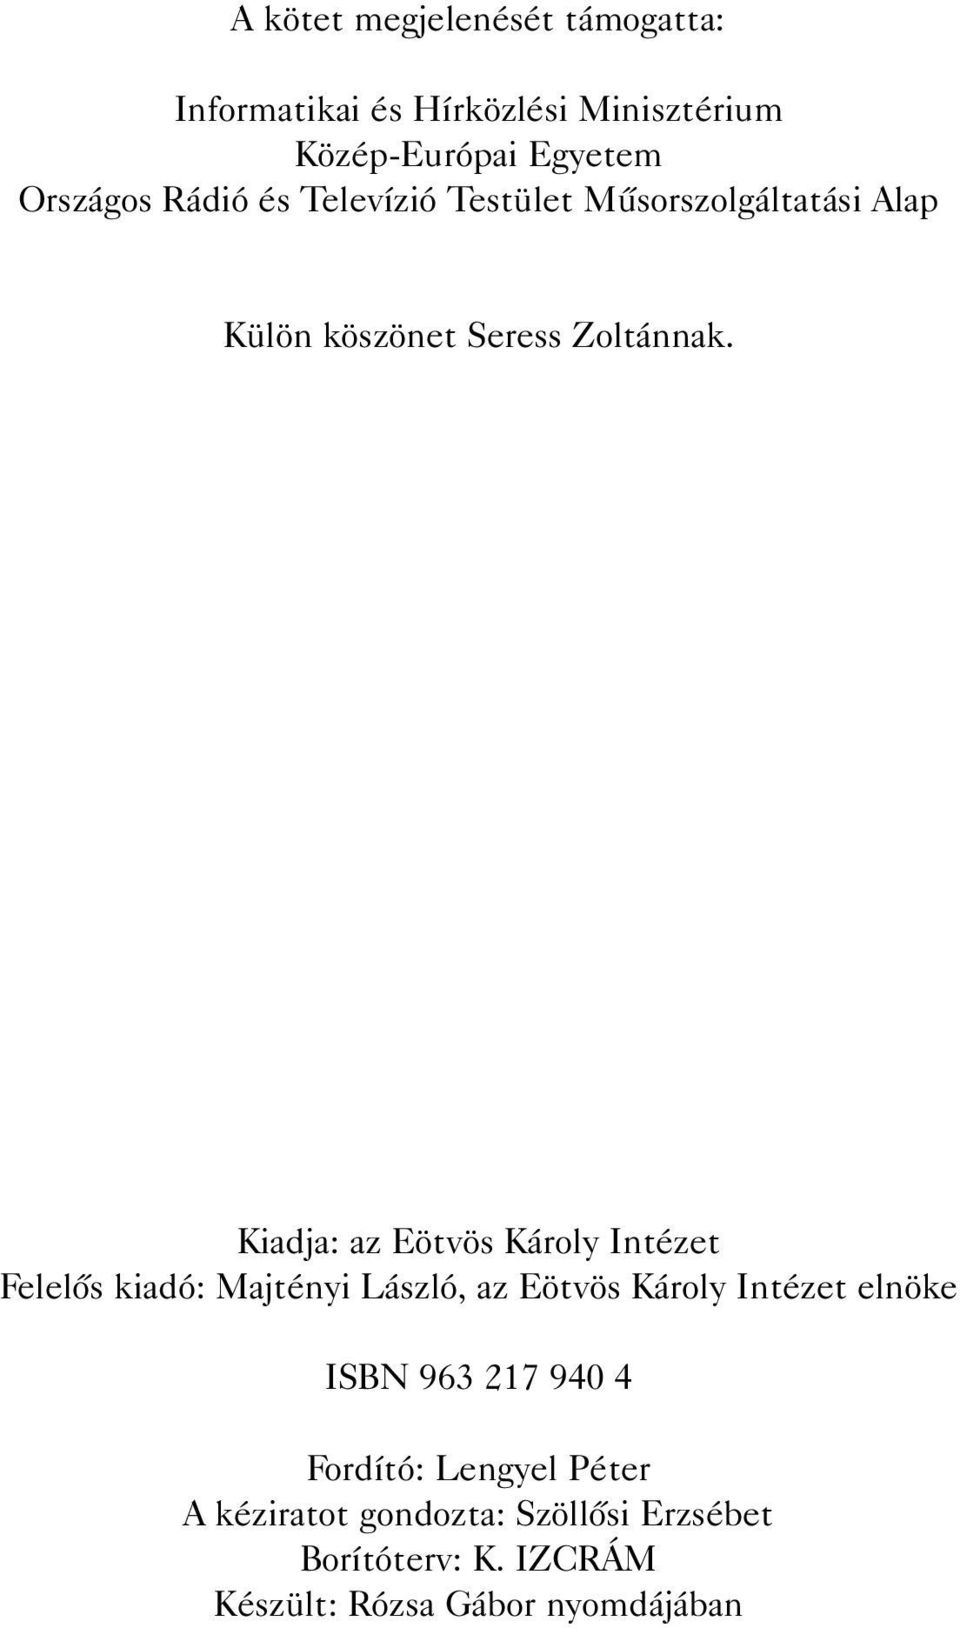 Kiadja: az Eötvös Károly Intézet Felelõs kiadó: Majtényi László, az Eötvös Károly Intézet elnöke ISBN 963